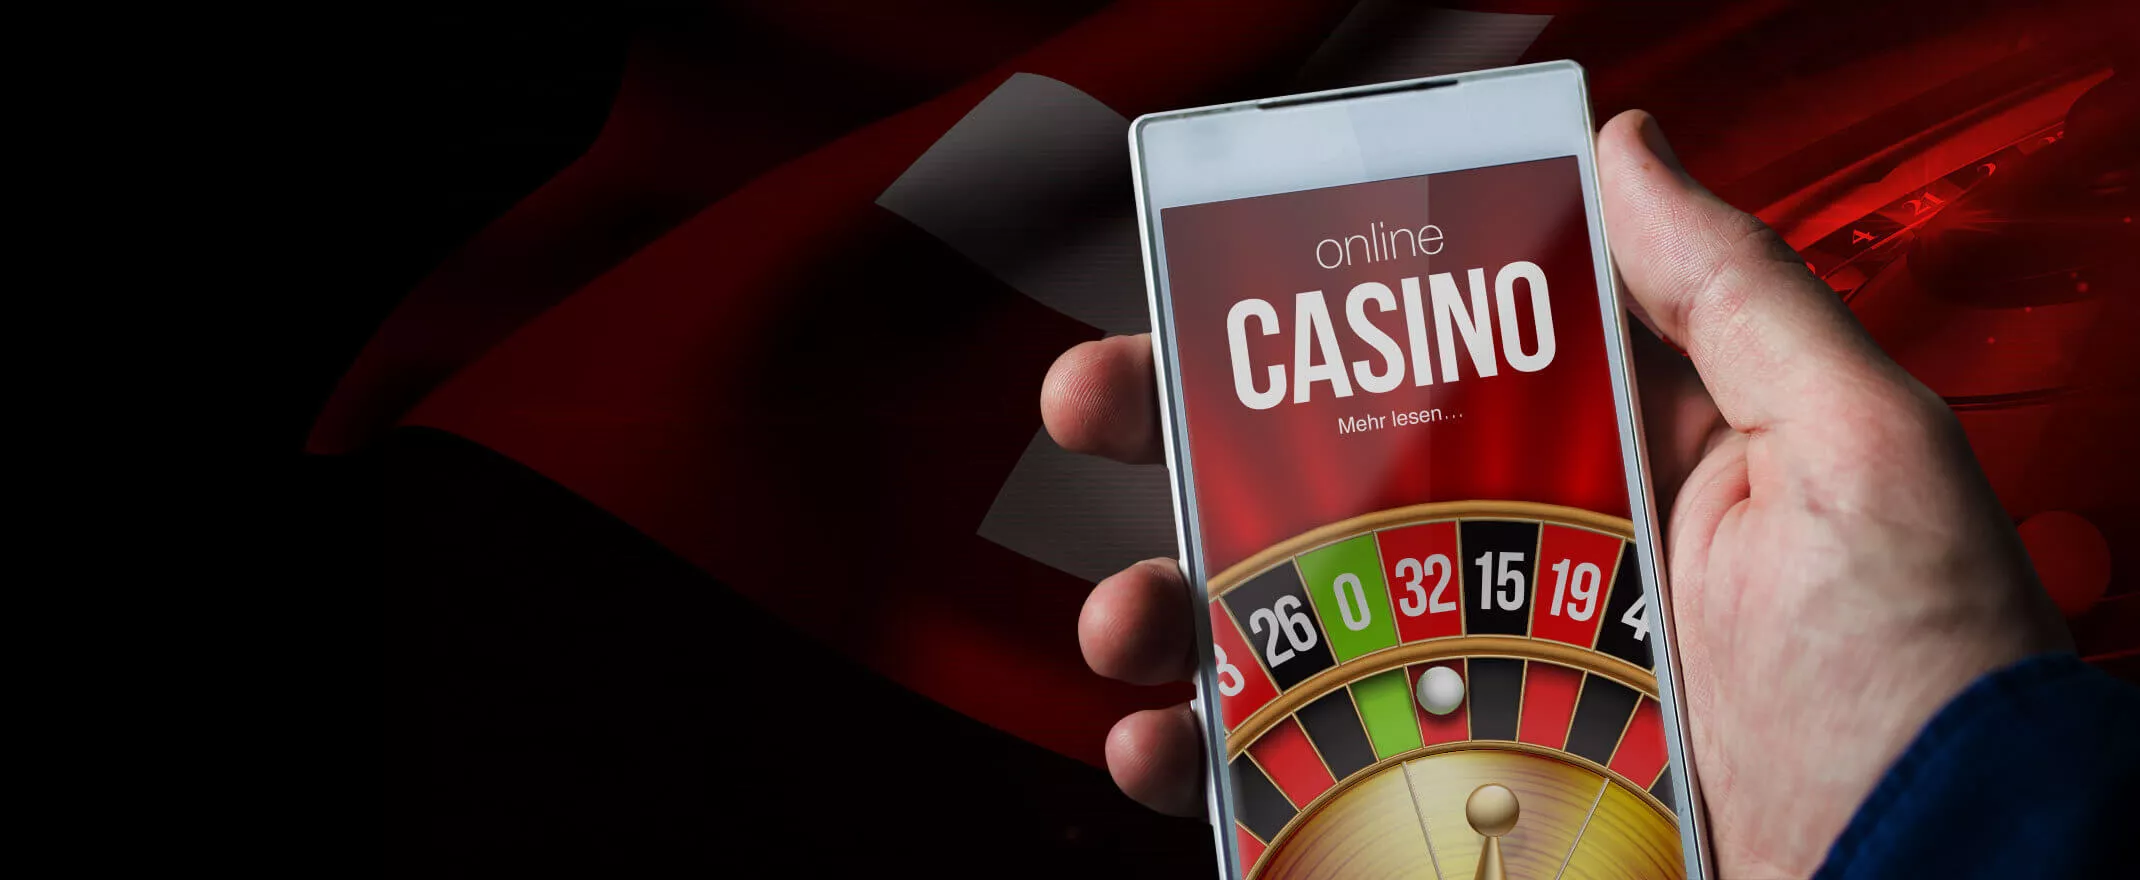 Casino Online: Eine unglaublich einfache Methode, die für alle funktioniert